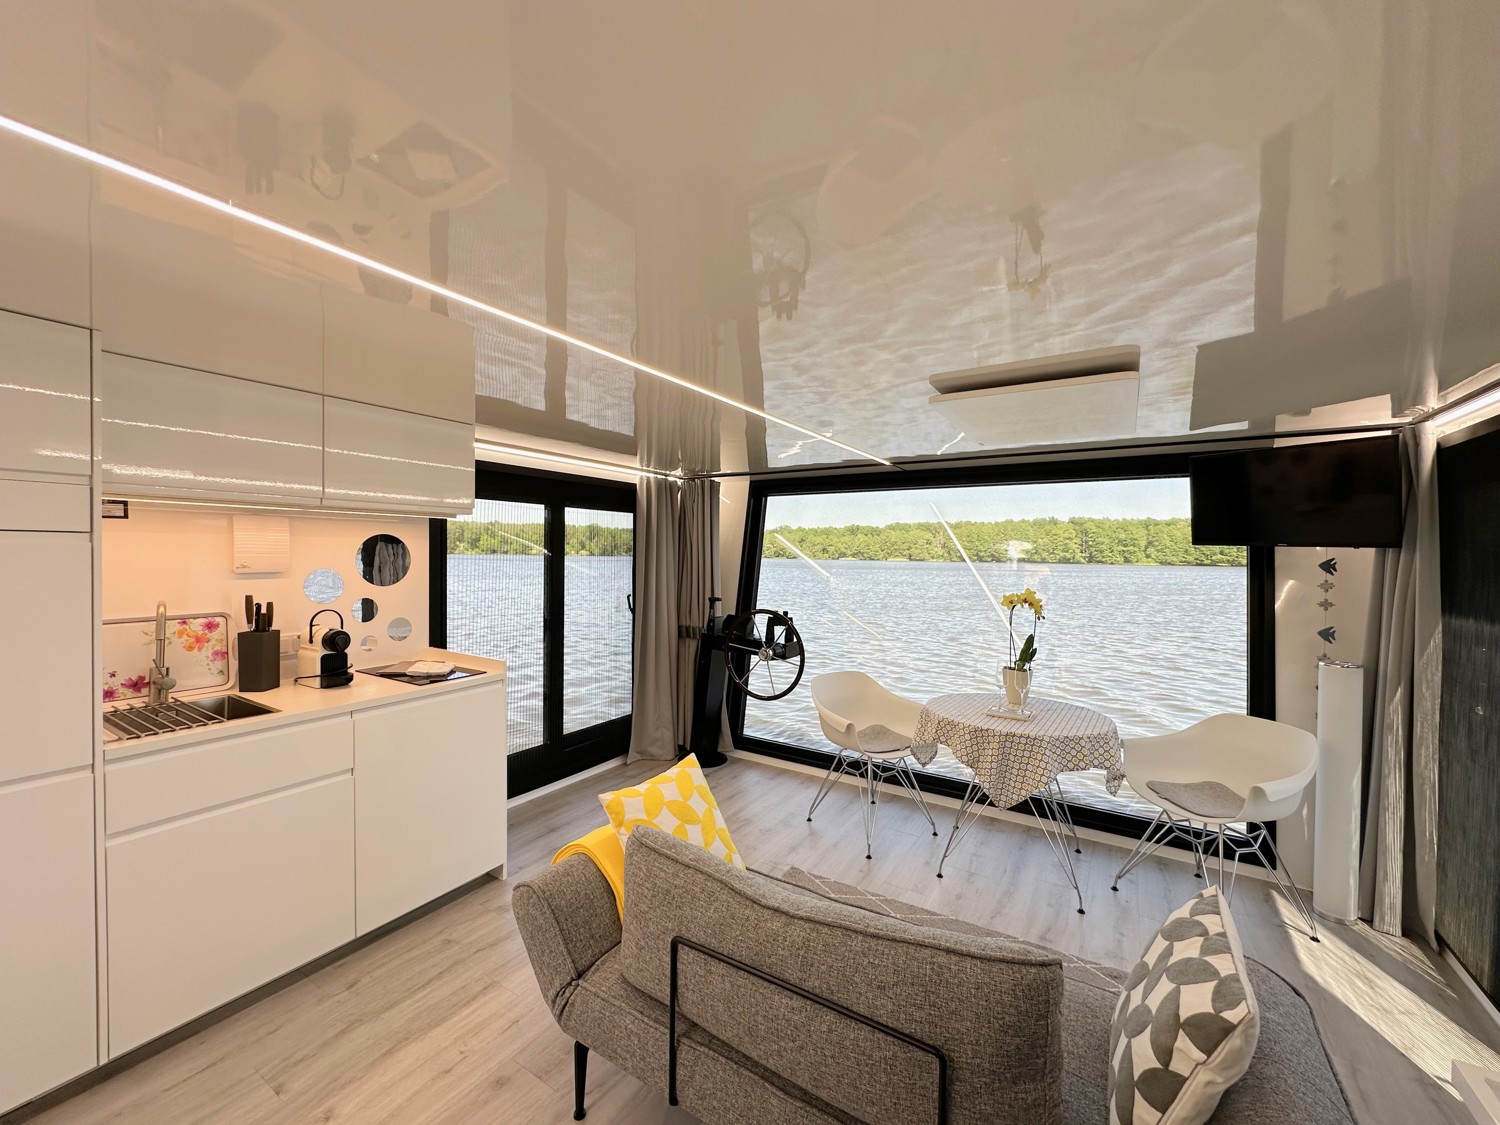 Wohnbereich mit offener küche und bodentiefen Fenstern (Hausboot)